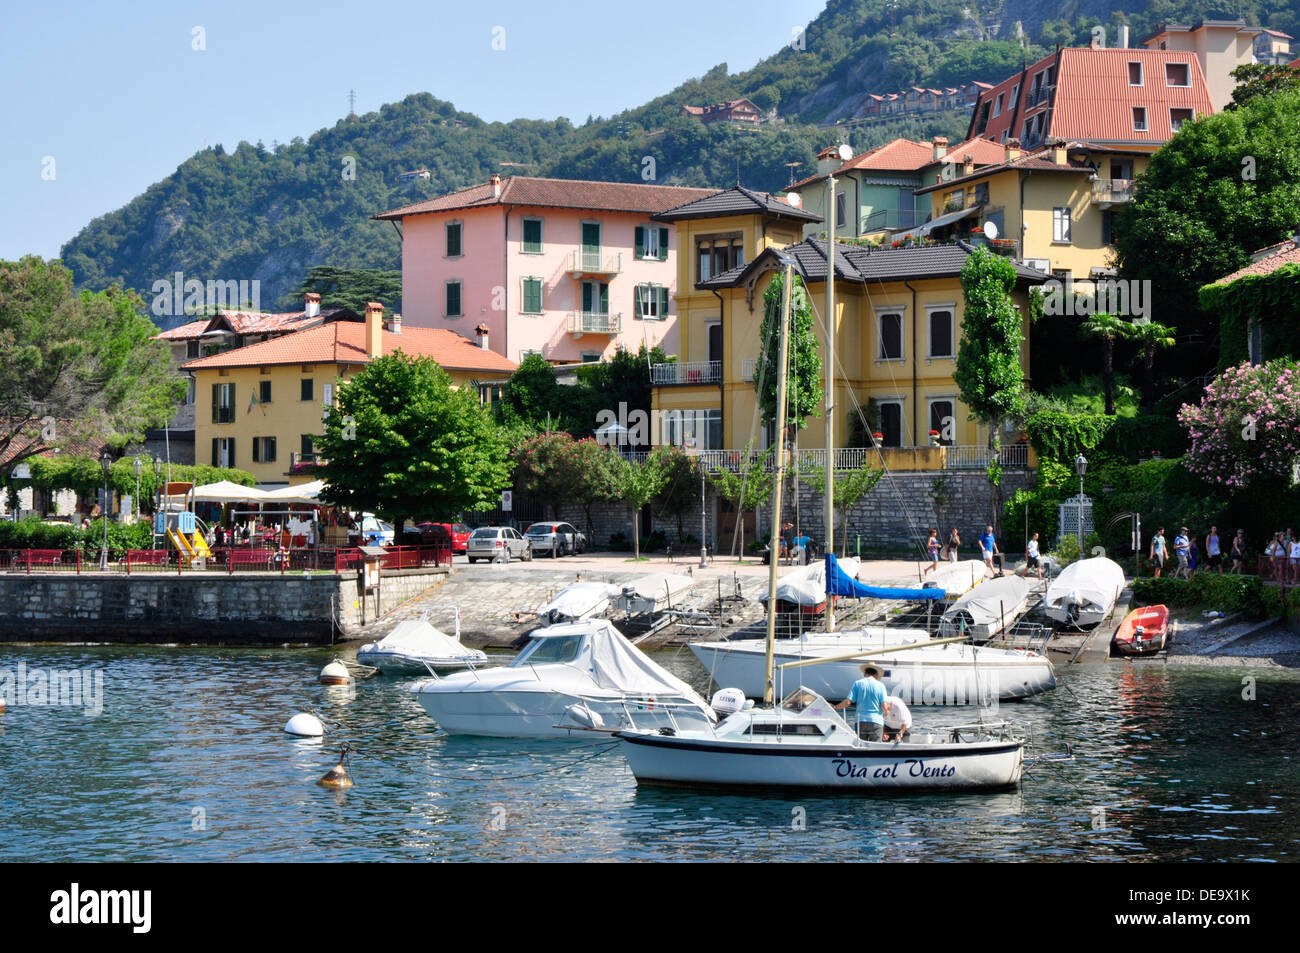 Italie - Lac de Côme - Varenna - voir marcher au bord du lac - la location de bateaux - Réflexions - Maisons de village - orange - montagnes d'Abri international Banque D'Images